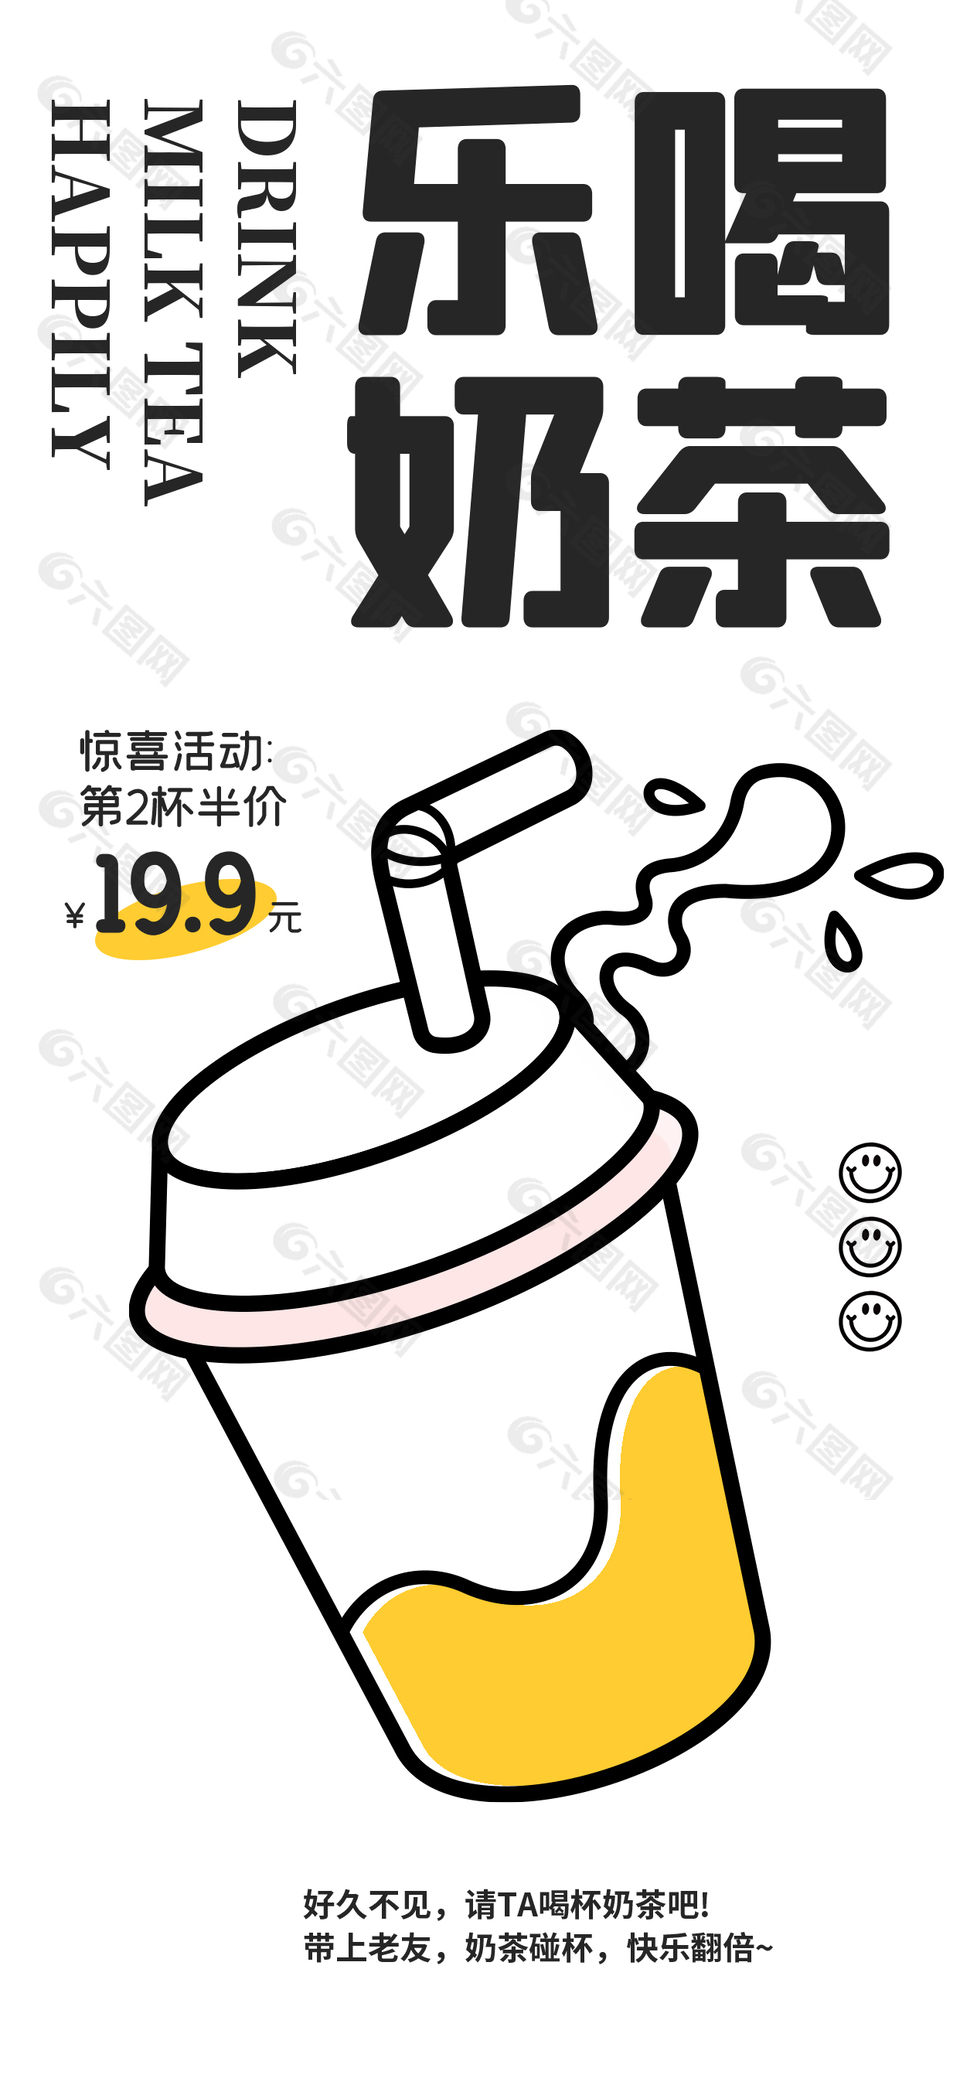 乐喝奶茶简约插画海报下载